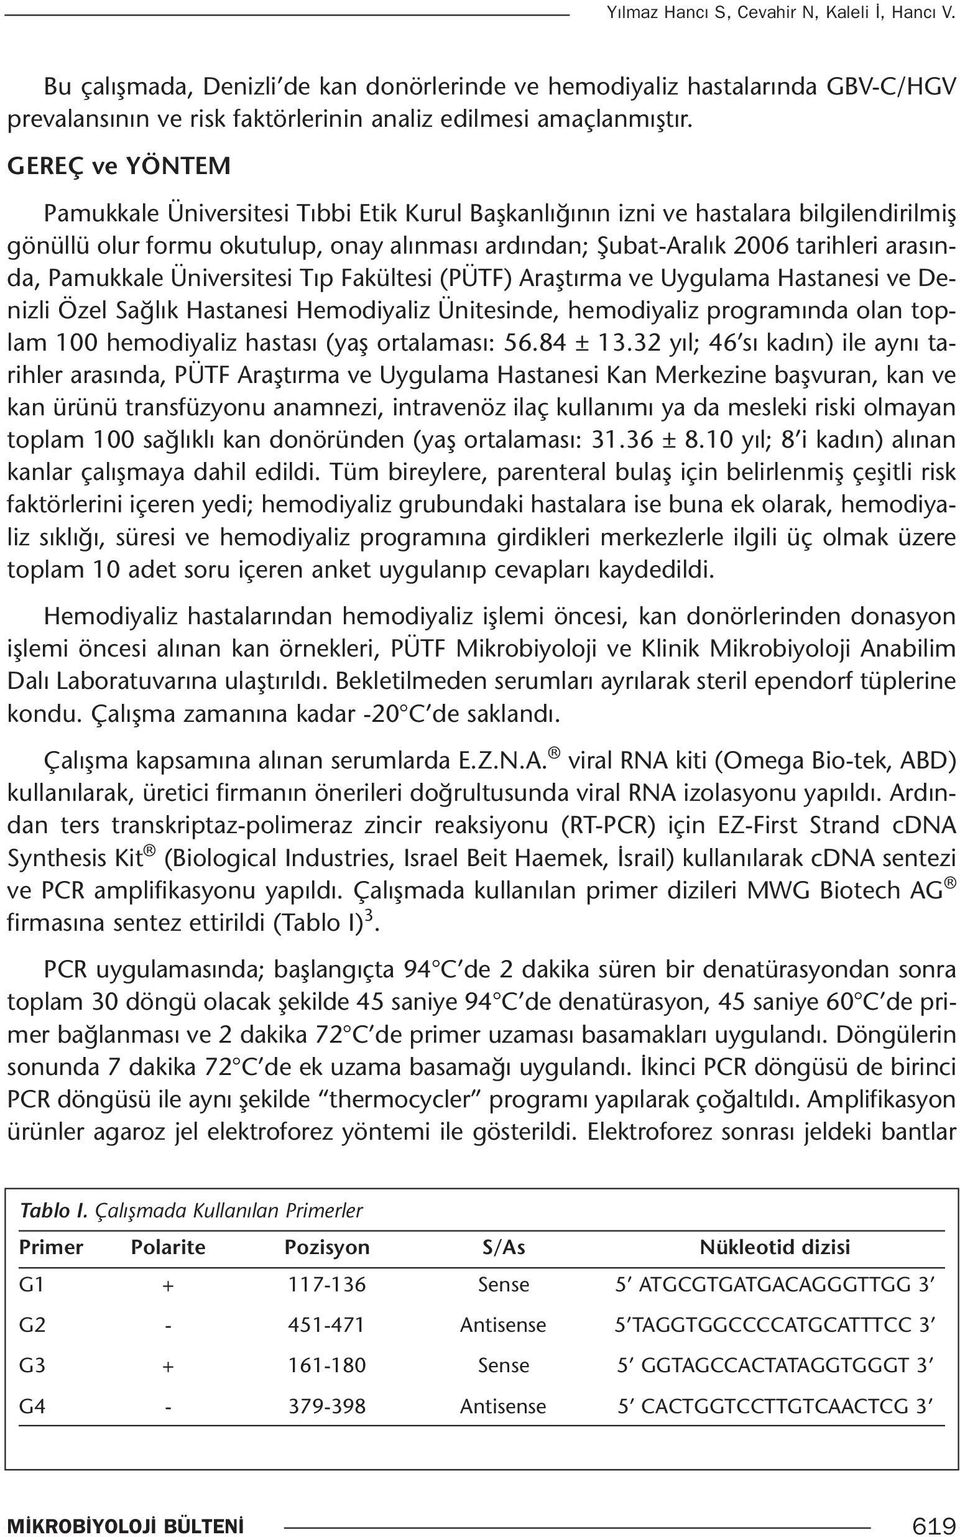 Pamukkale Üniversitesi Tıp Fakültesi (PÜTF) Araştırma ve Uygulama Hastanesi ve Denizli Özel Sağlık Hastanesi Hemodiyaliz Ünitesinde, hemodiyaliz programında olan toplam 100 hemodiyaliz hastası (yaş